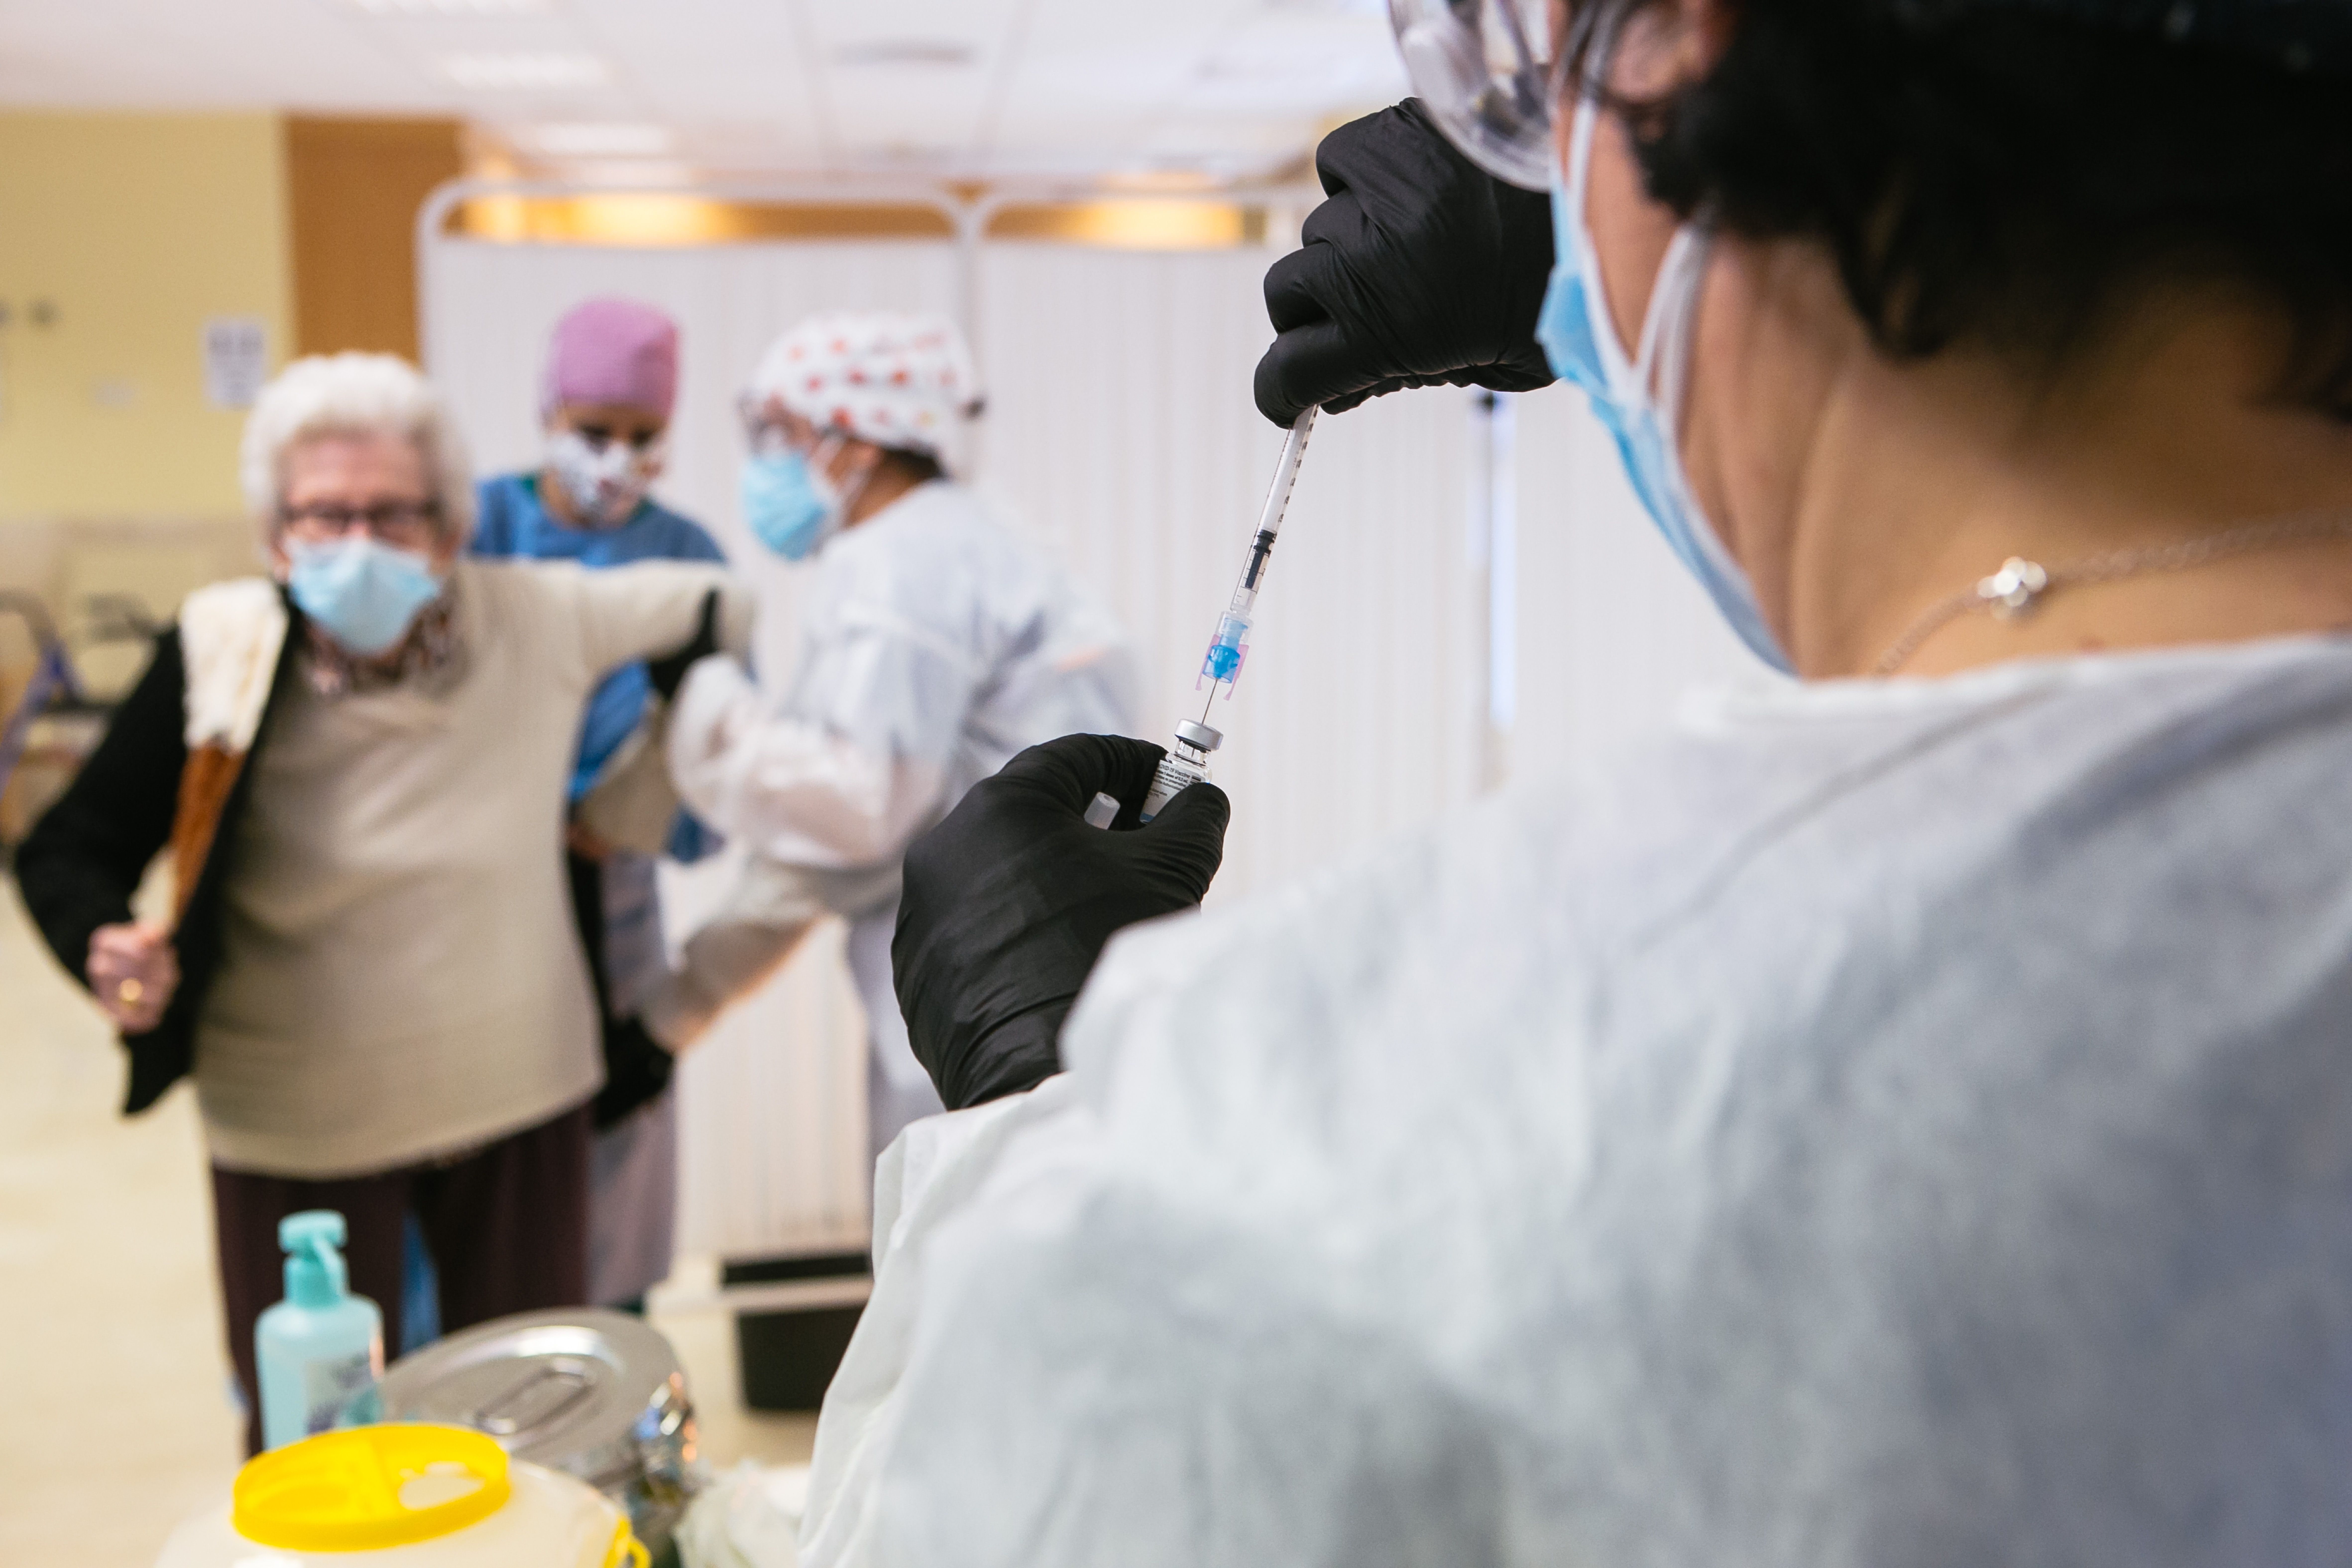 Enfermeros valencianos jubilados se ofrecen voluntarios para vacunar, pero el Govern no les contesta  Foto: Europa Press